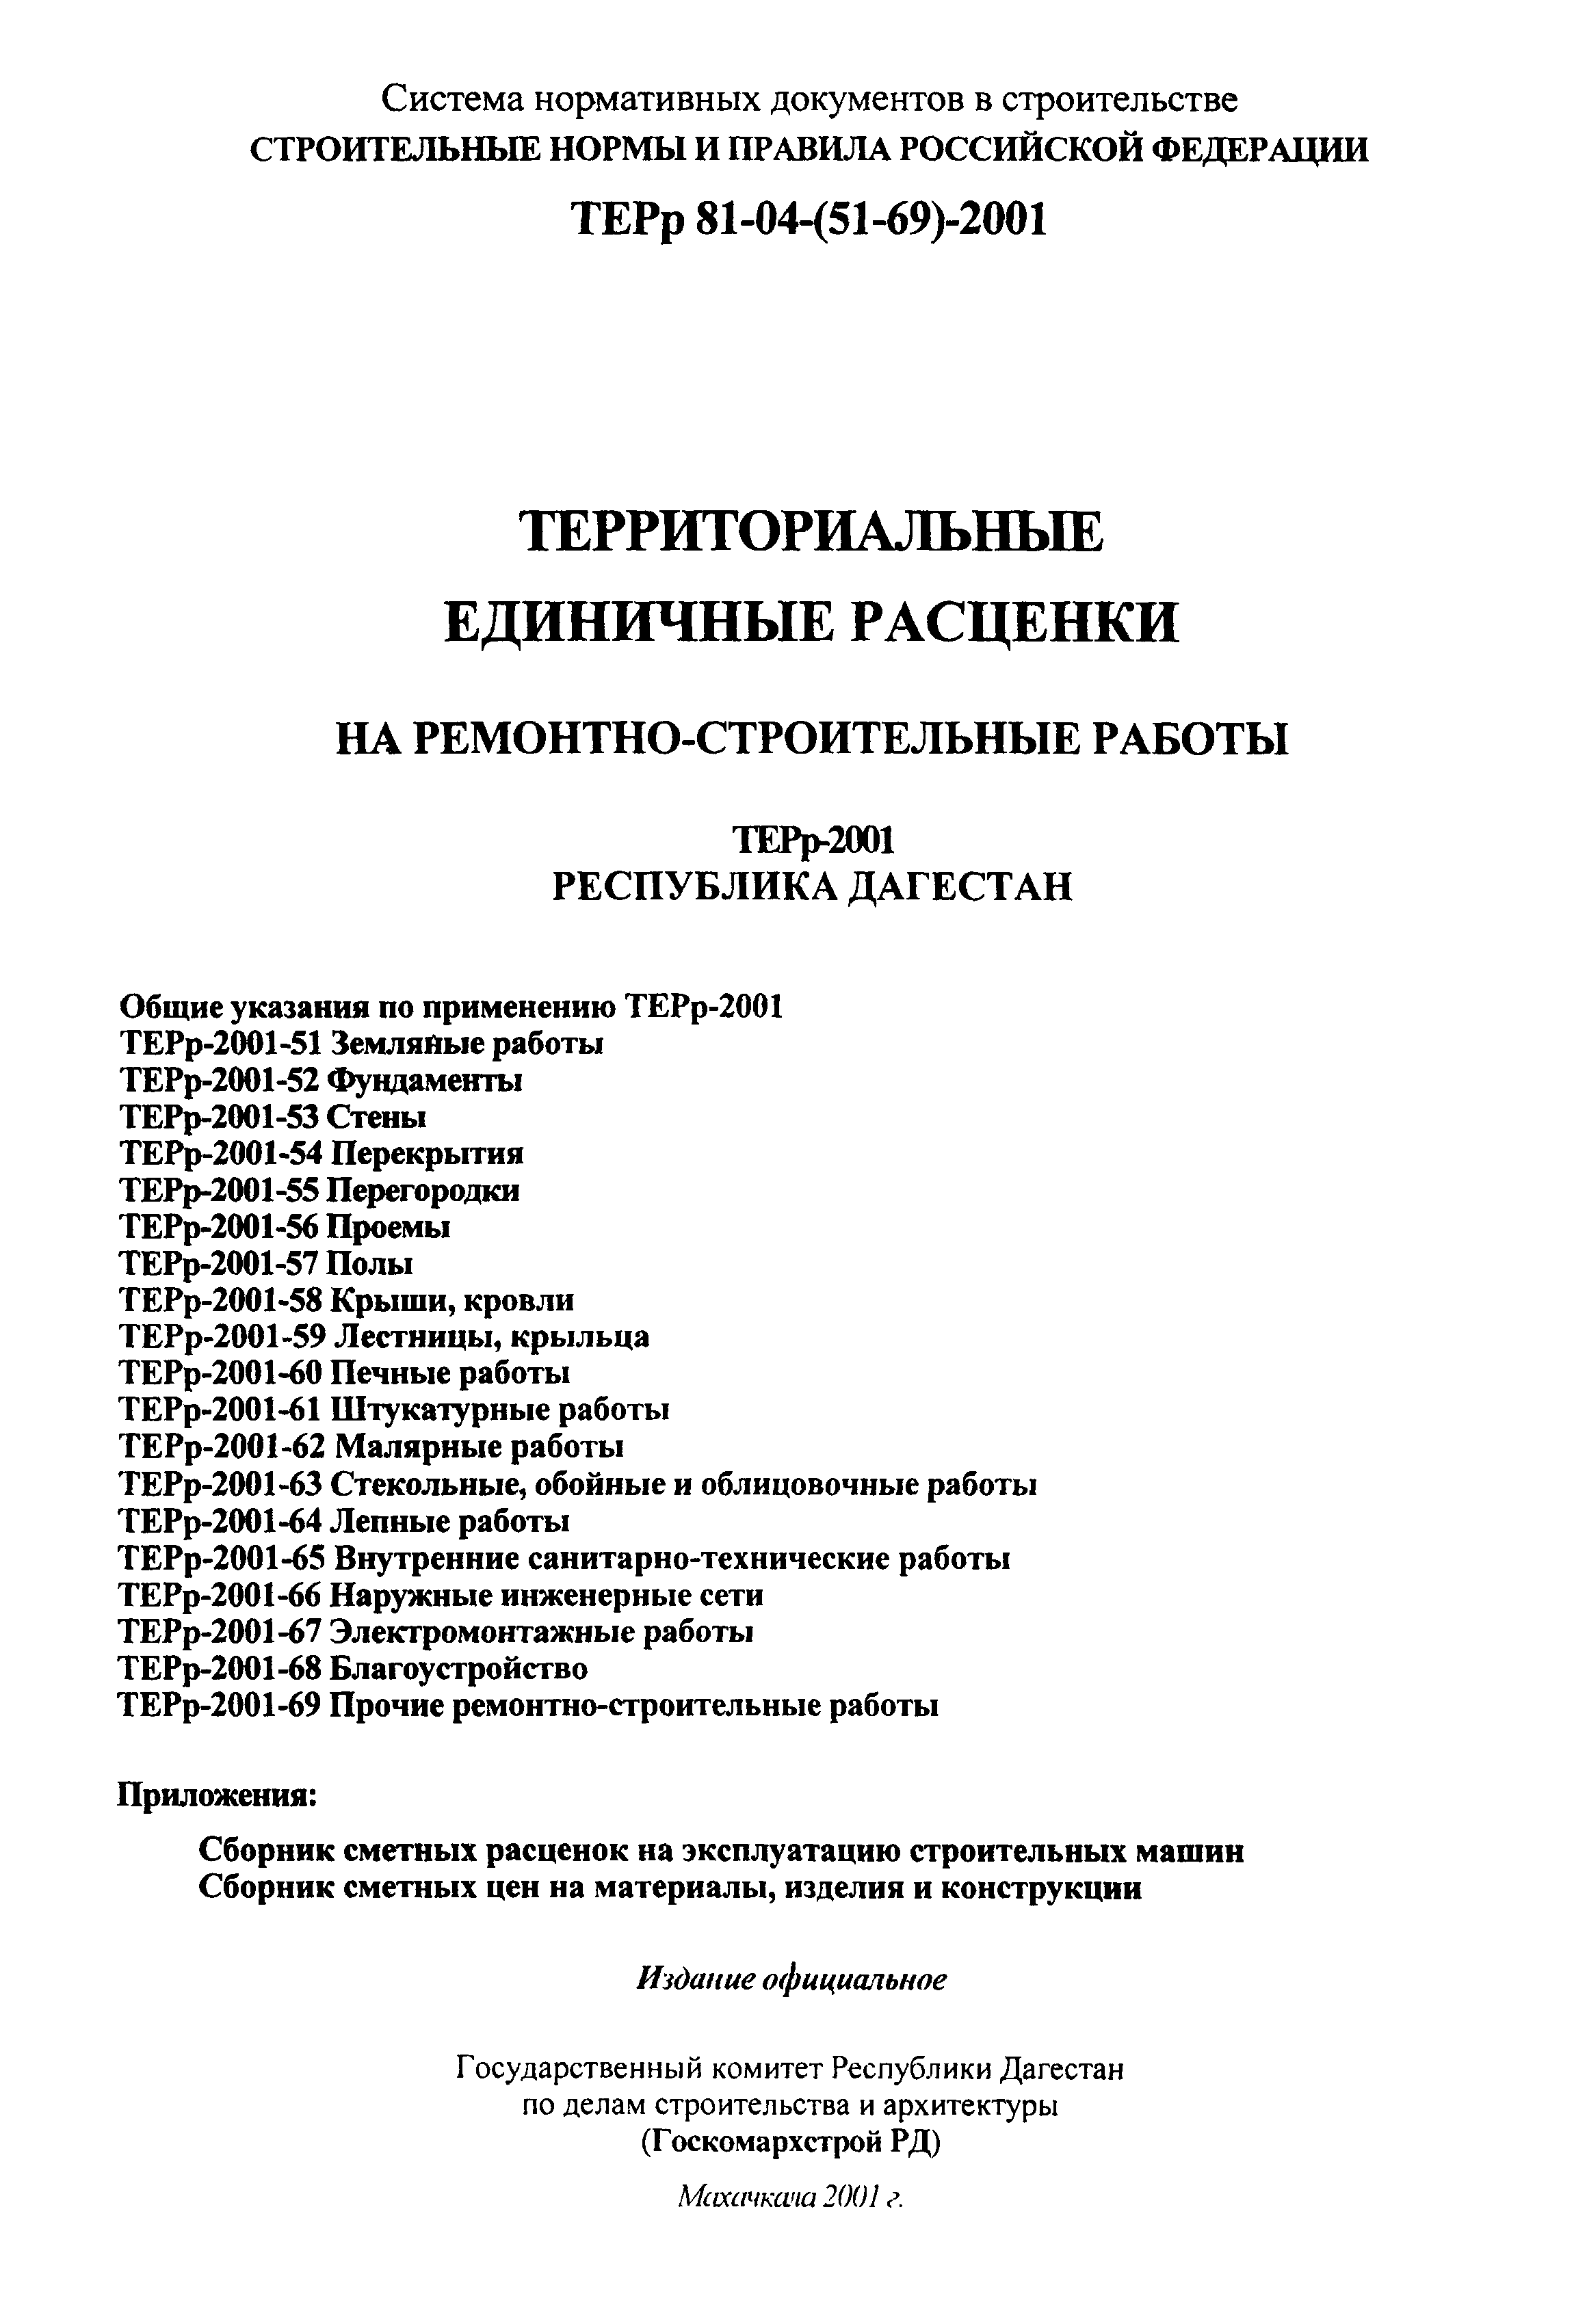 ТЕРр Республика Дагестан 2001-51